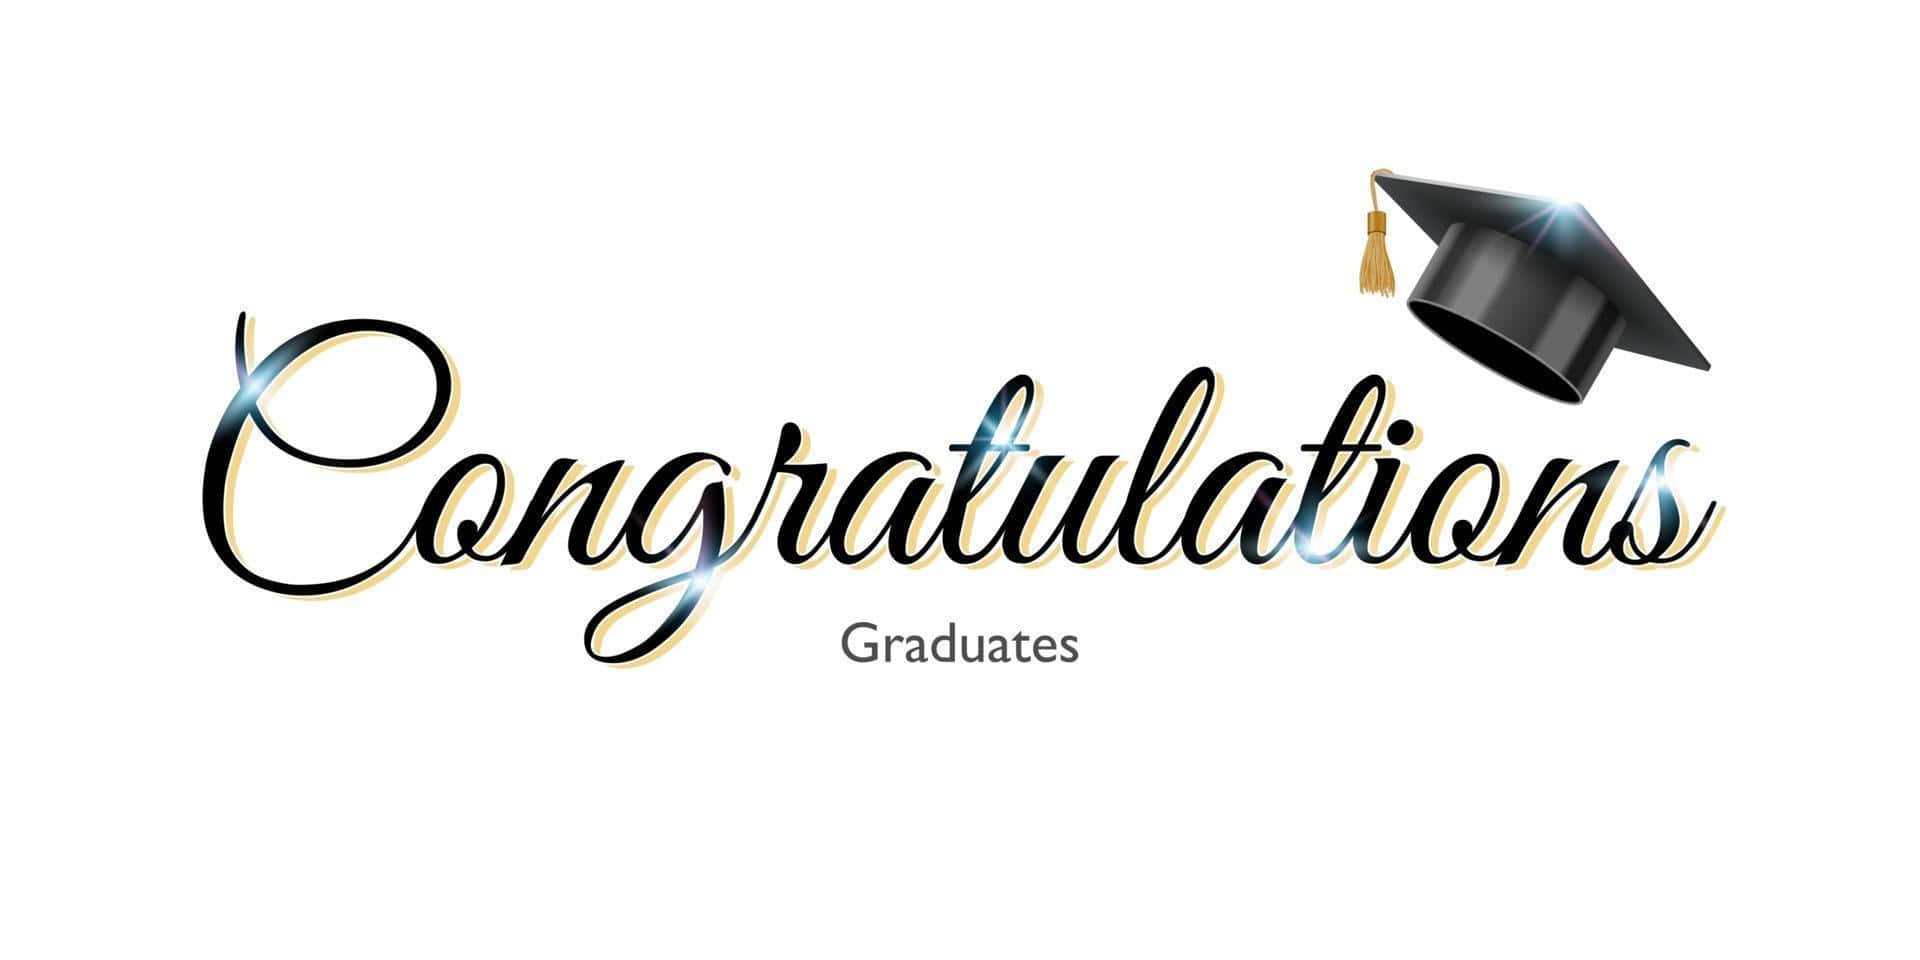 Download Congratulations Graduate Logo